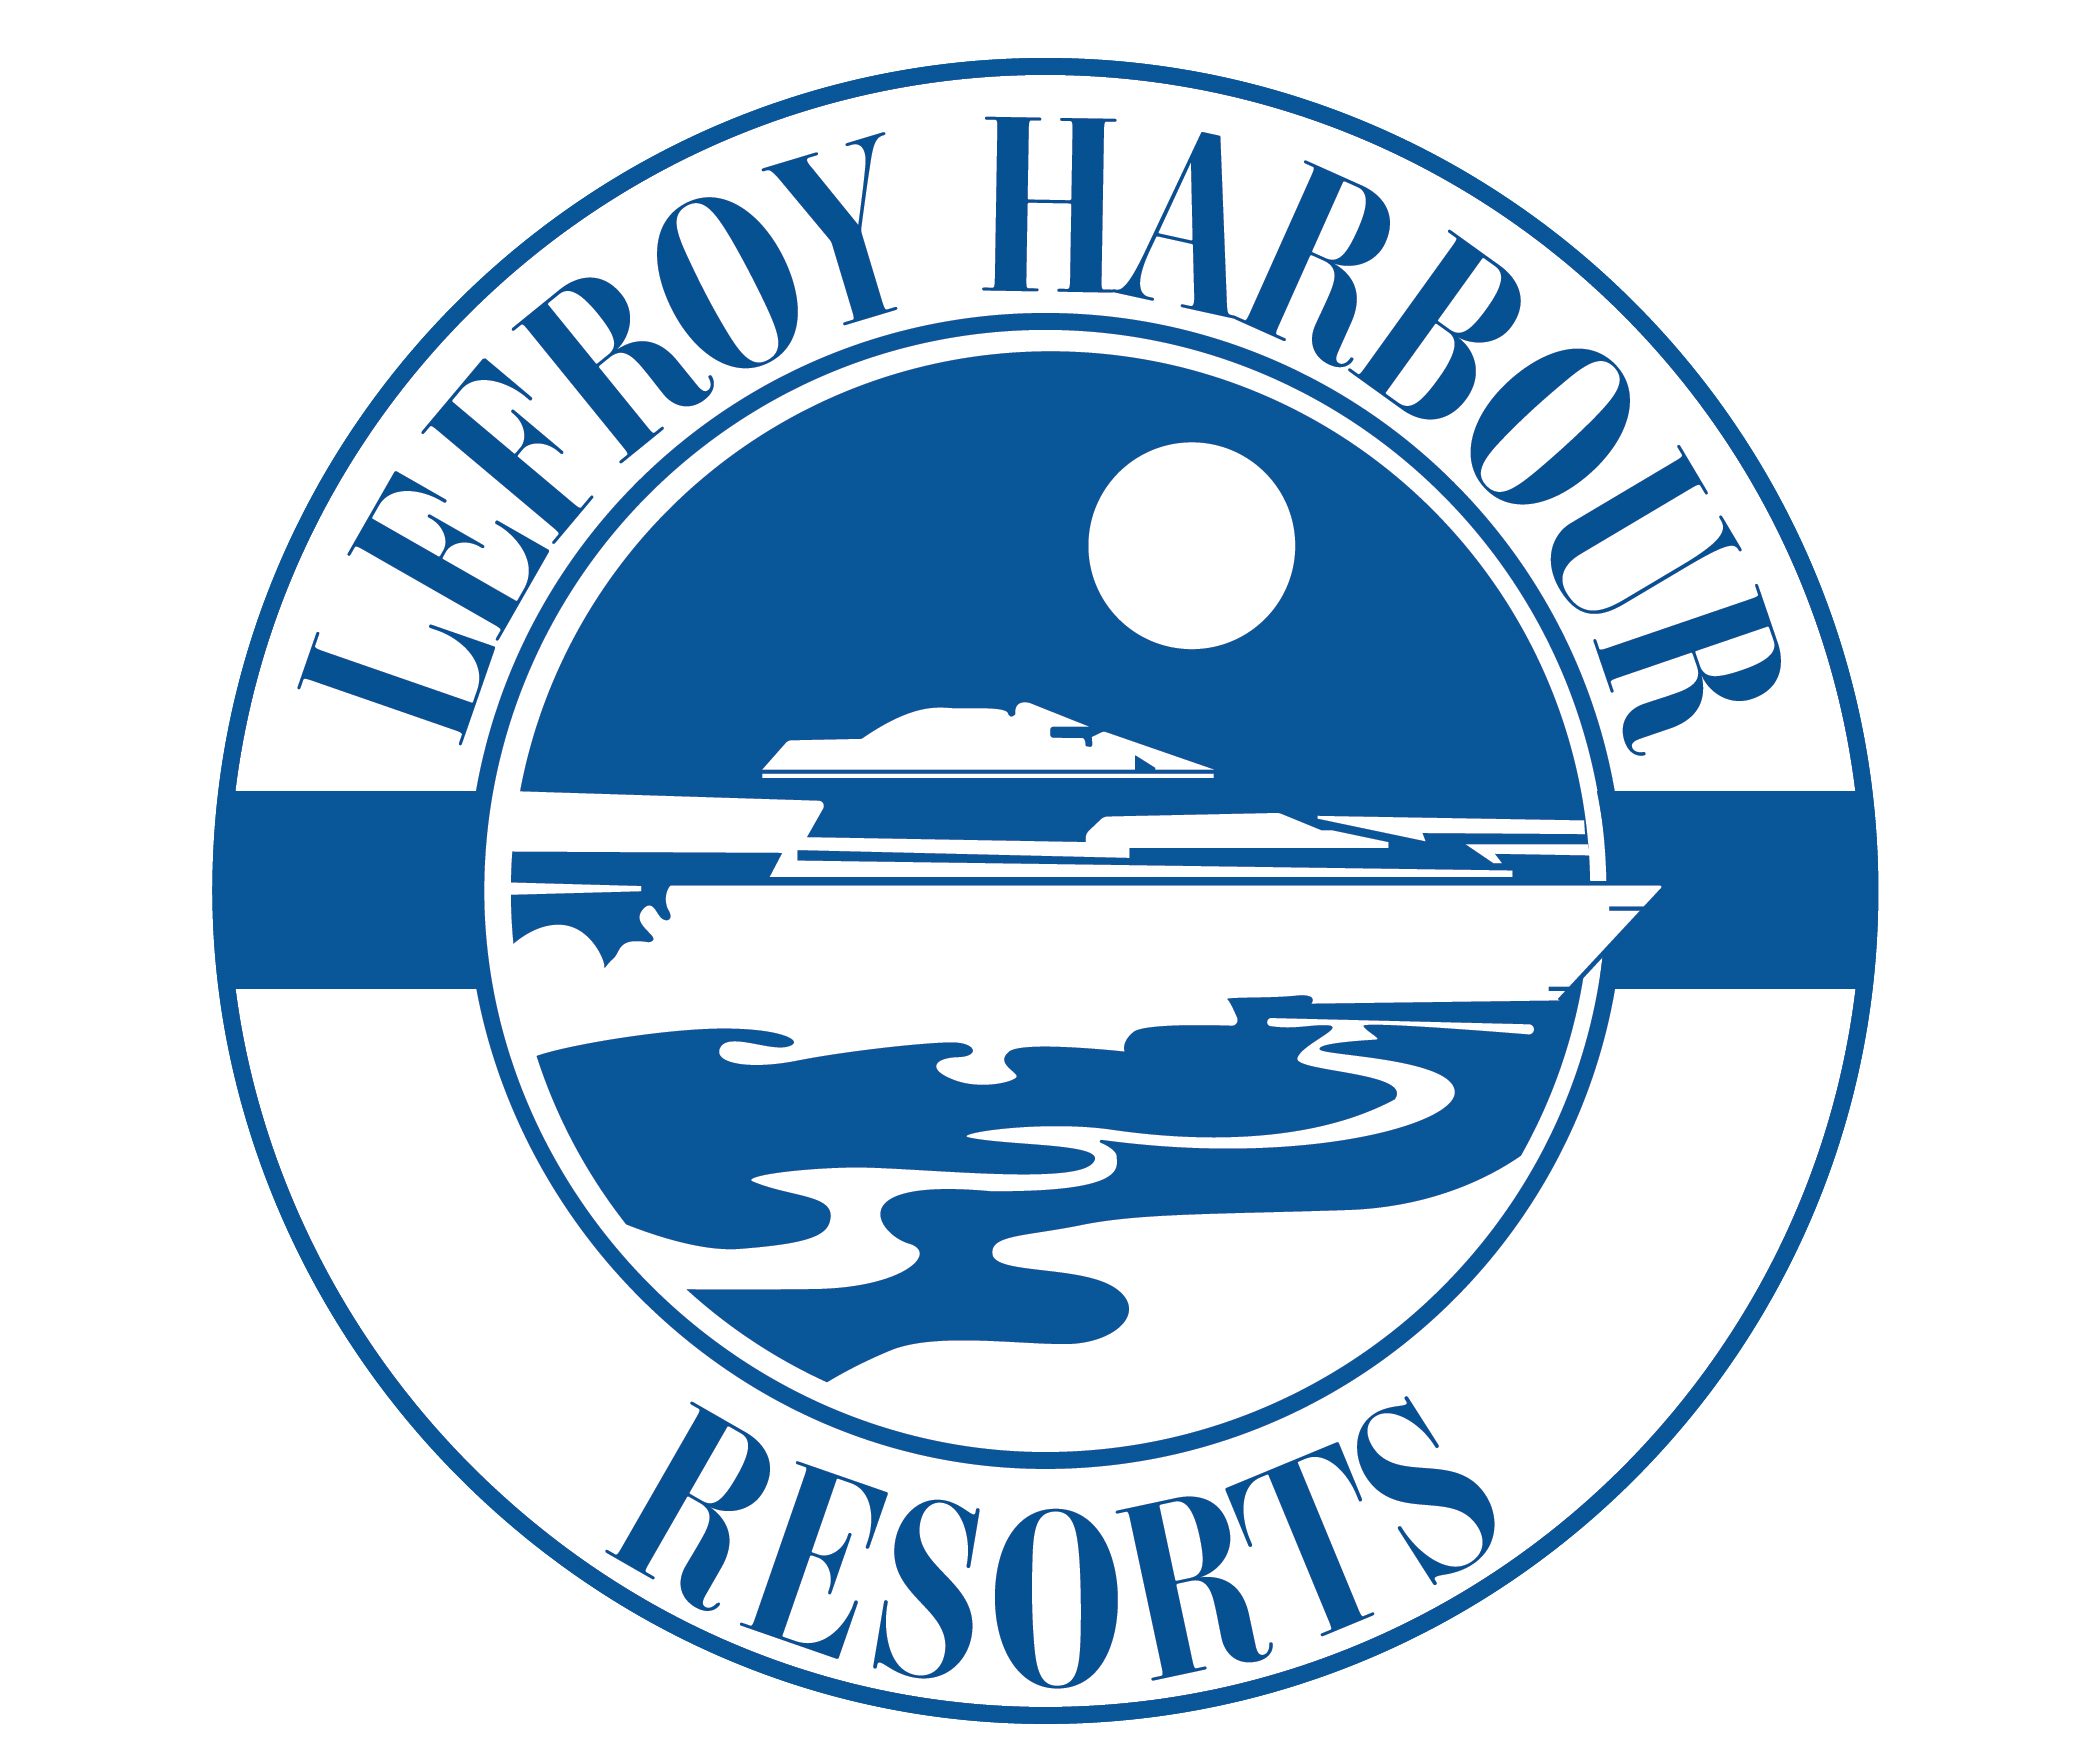 Lefroyharbour Logo Rebuilt2021 01